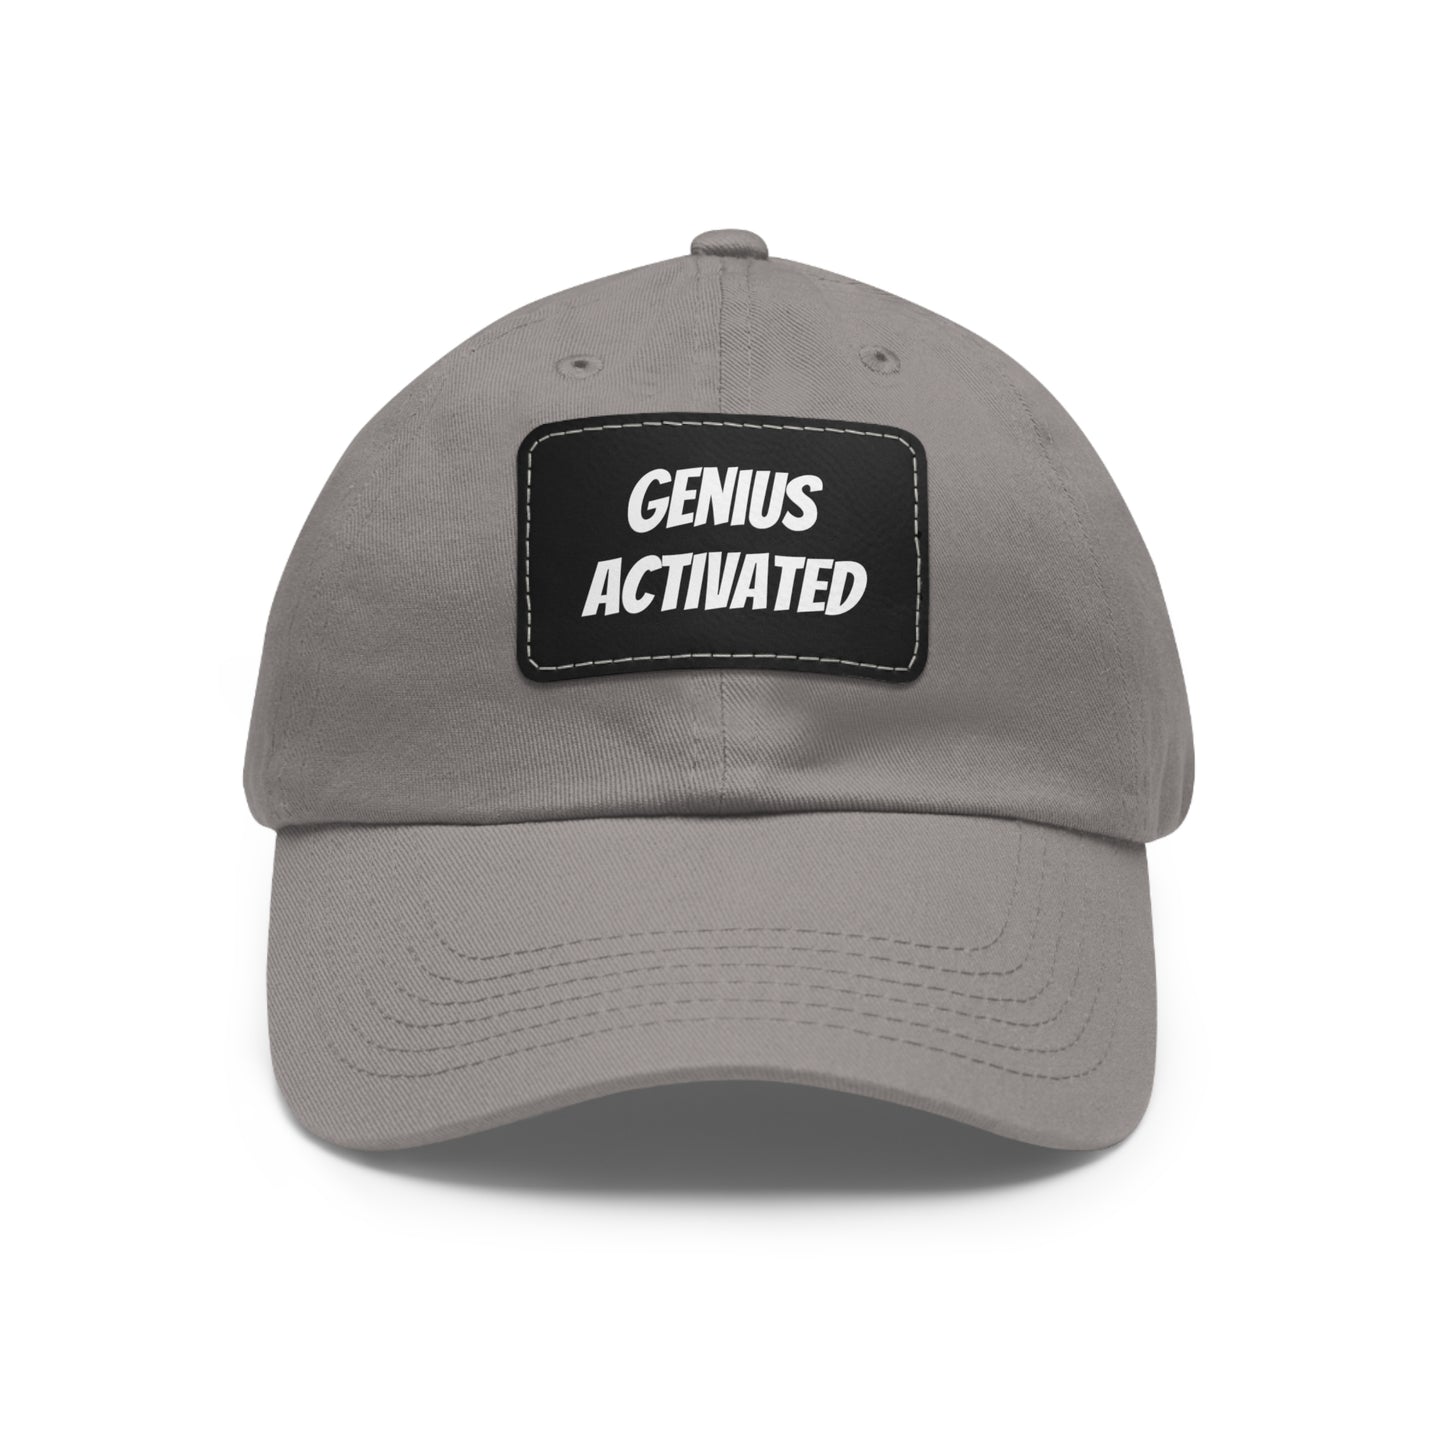 Thinking Cap, Focus, "Genius Activated" Baseball Cap